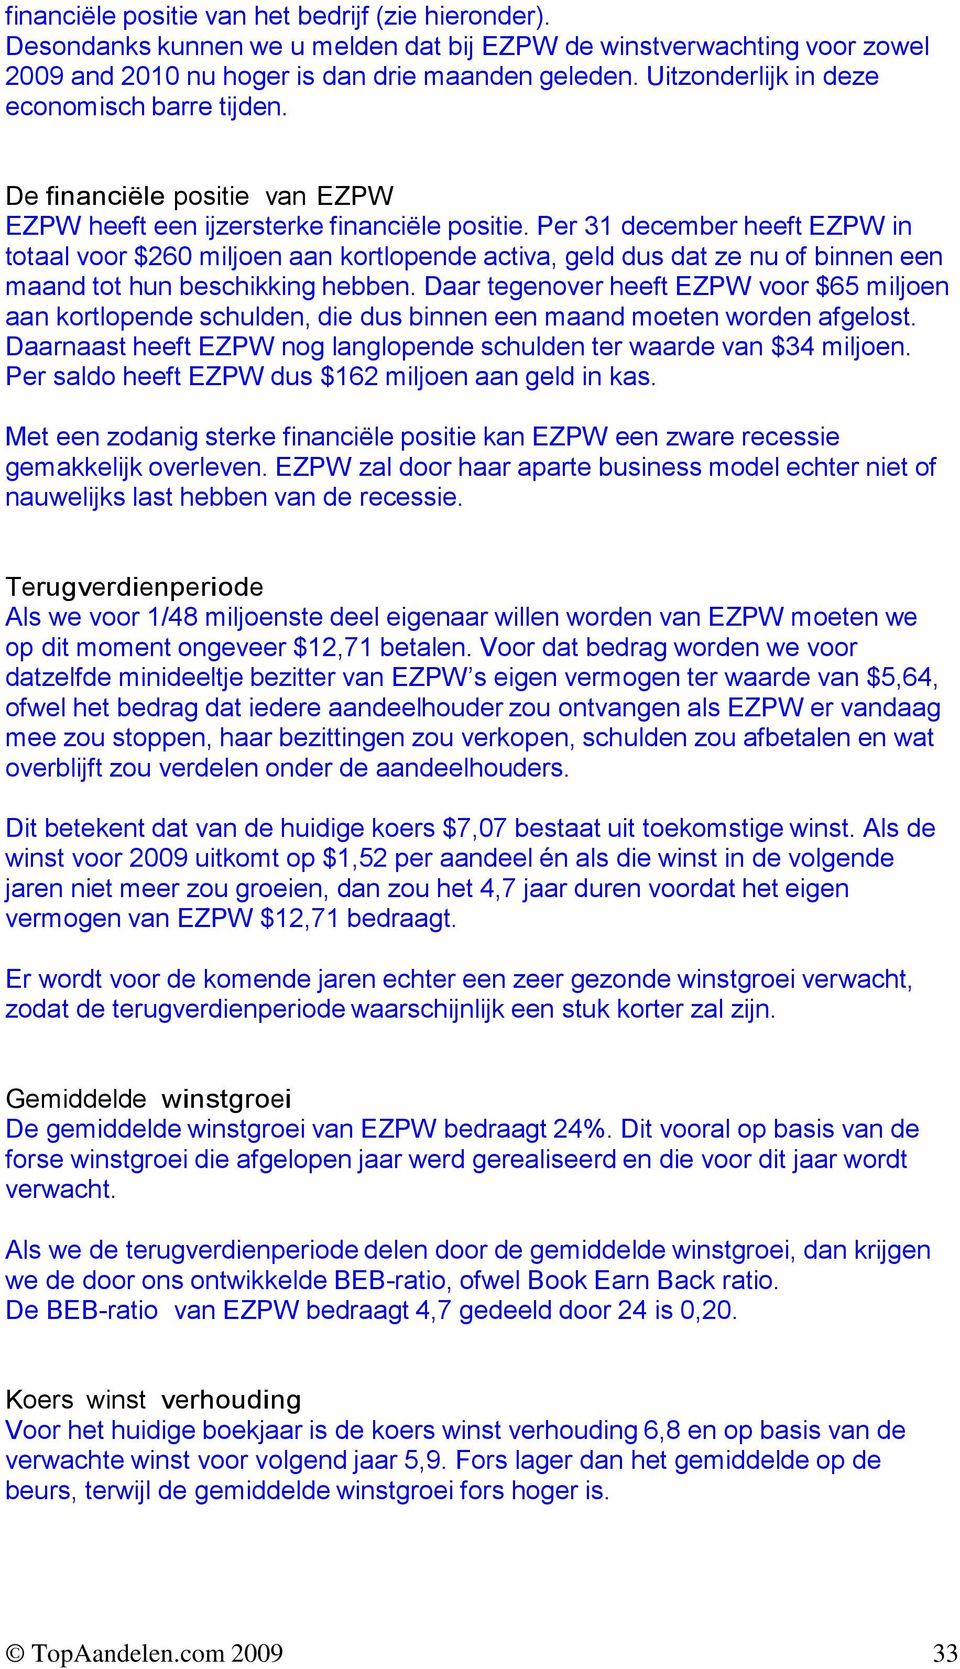 Per 31 december heeft EZPW in totaal voor $260 miljoen aan kortlopende activa, geld dus dat ze nu of binnen een maand tot hun beschikking hebben.